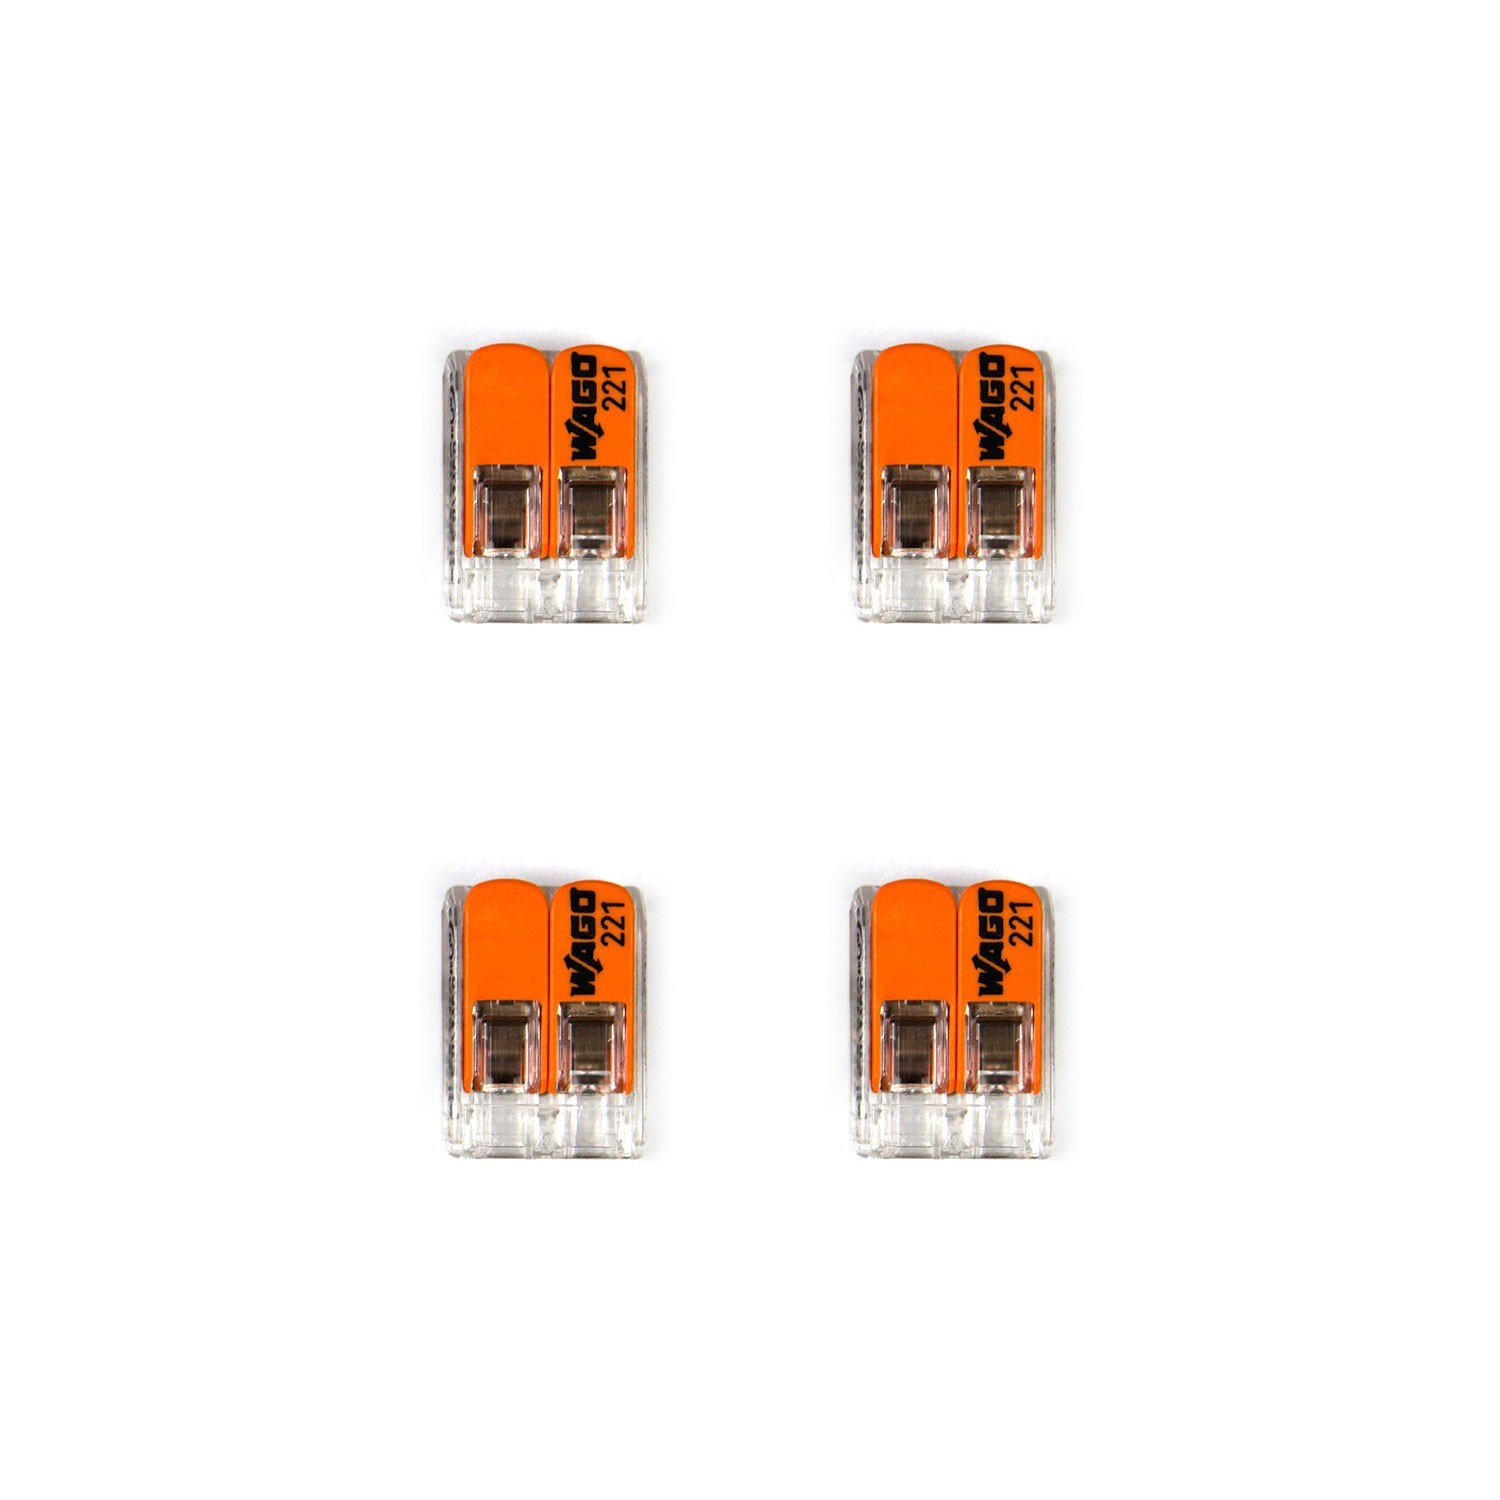 Kit de conectores WAGO compatible con cable de 2 conductores para mini escudo con interruptor